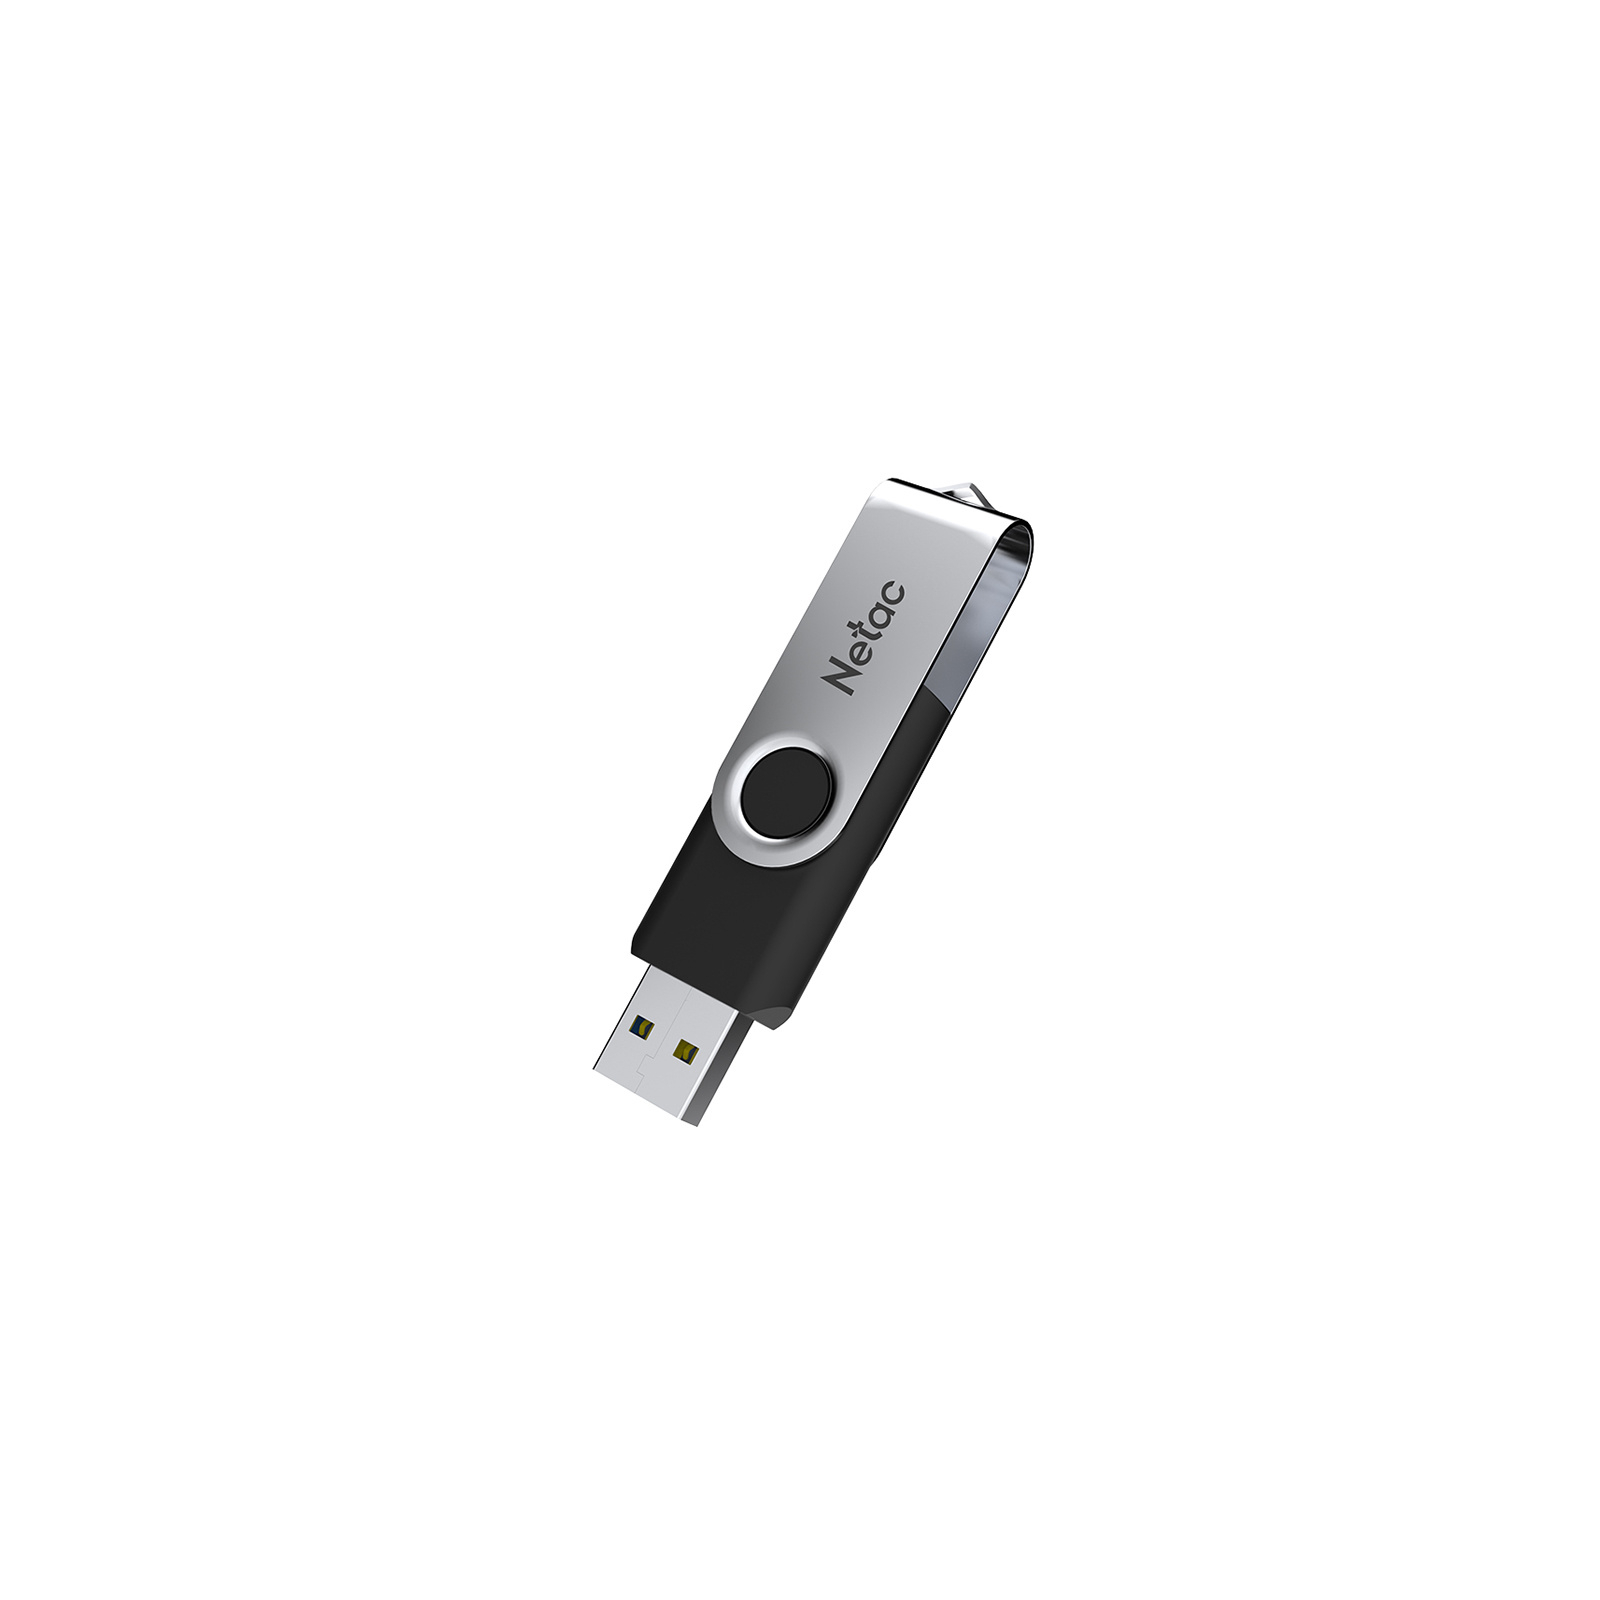 USB флеш накопитель Netac 32GB U505 USB 2.0 (NT03U505N-032G-30BK) изображение 5